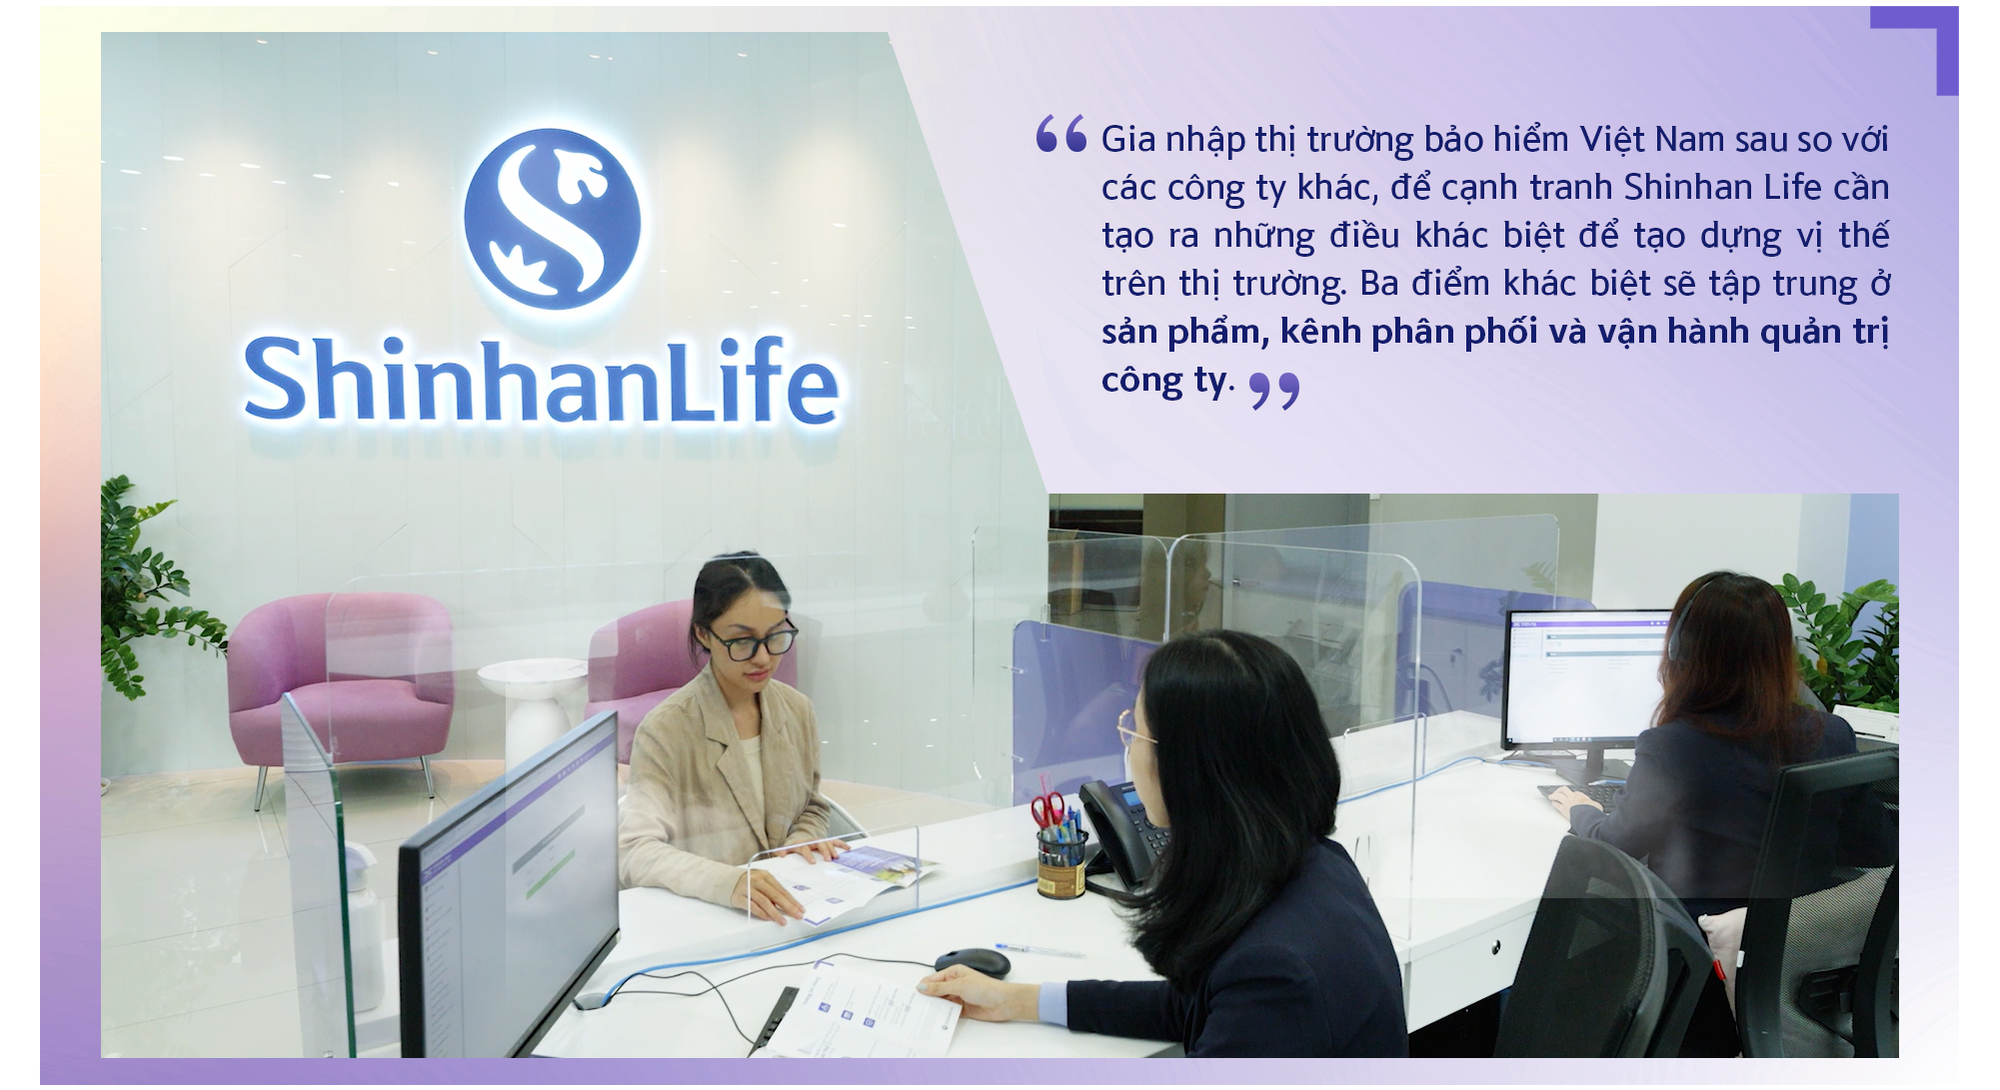 Shinhan Life Việt Nam và khát vọng góp phần nâng cao chất lượng cuộc sống người Việt - Ảnh 3.